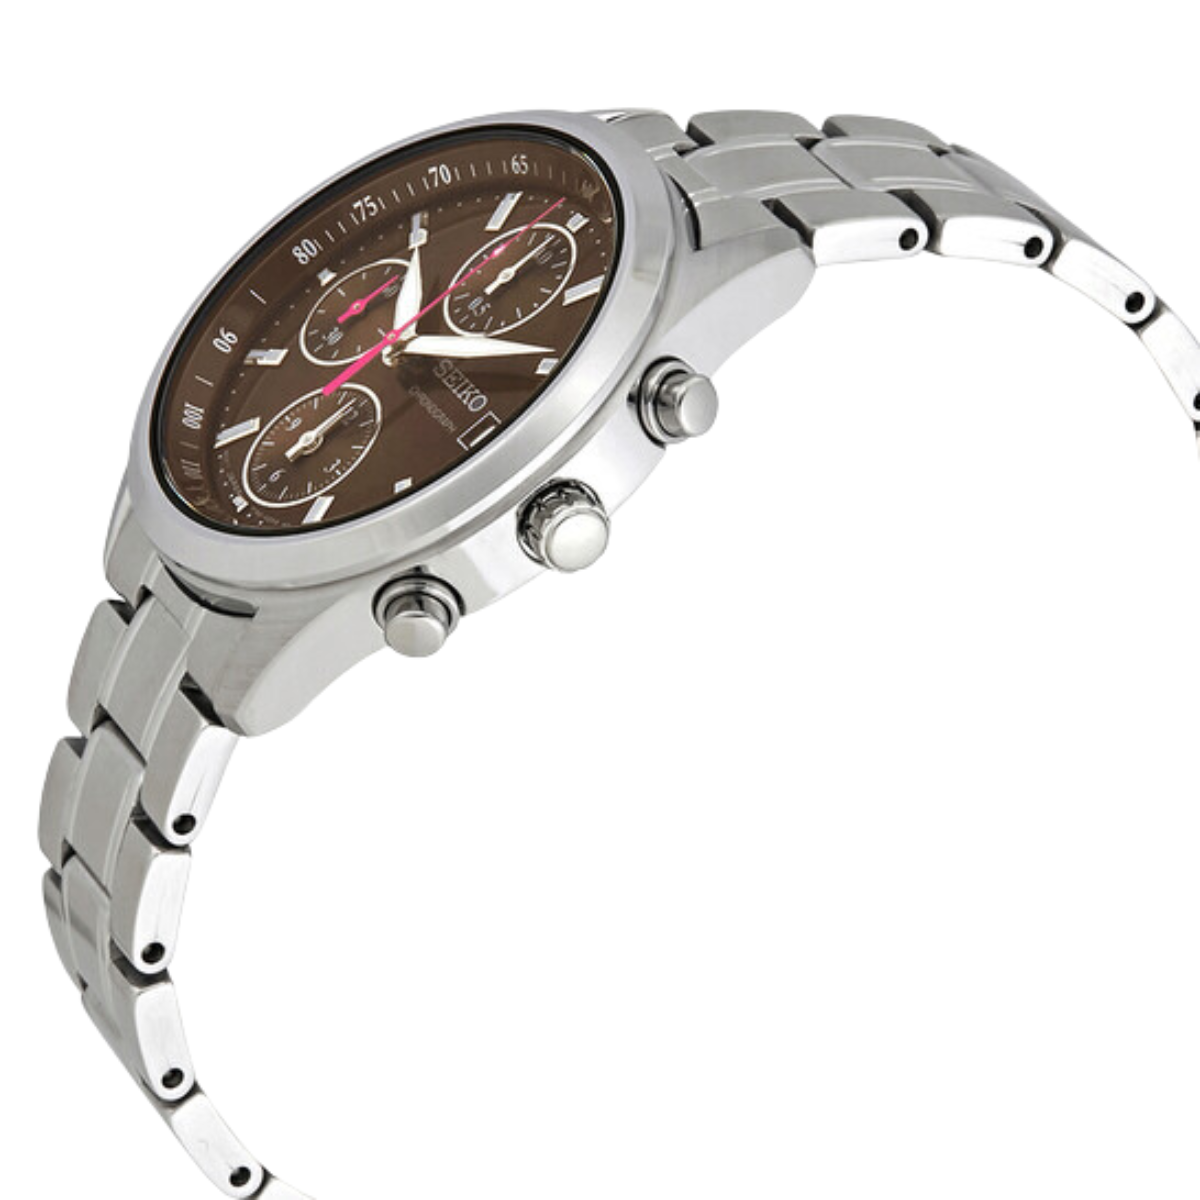 นาฬิกา SEIKO Chronograph Women's Watch รุ่น SNDV51 SNDV51P SNDV51P1 Quartz